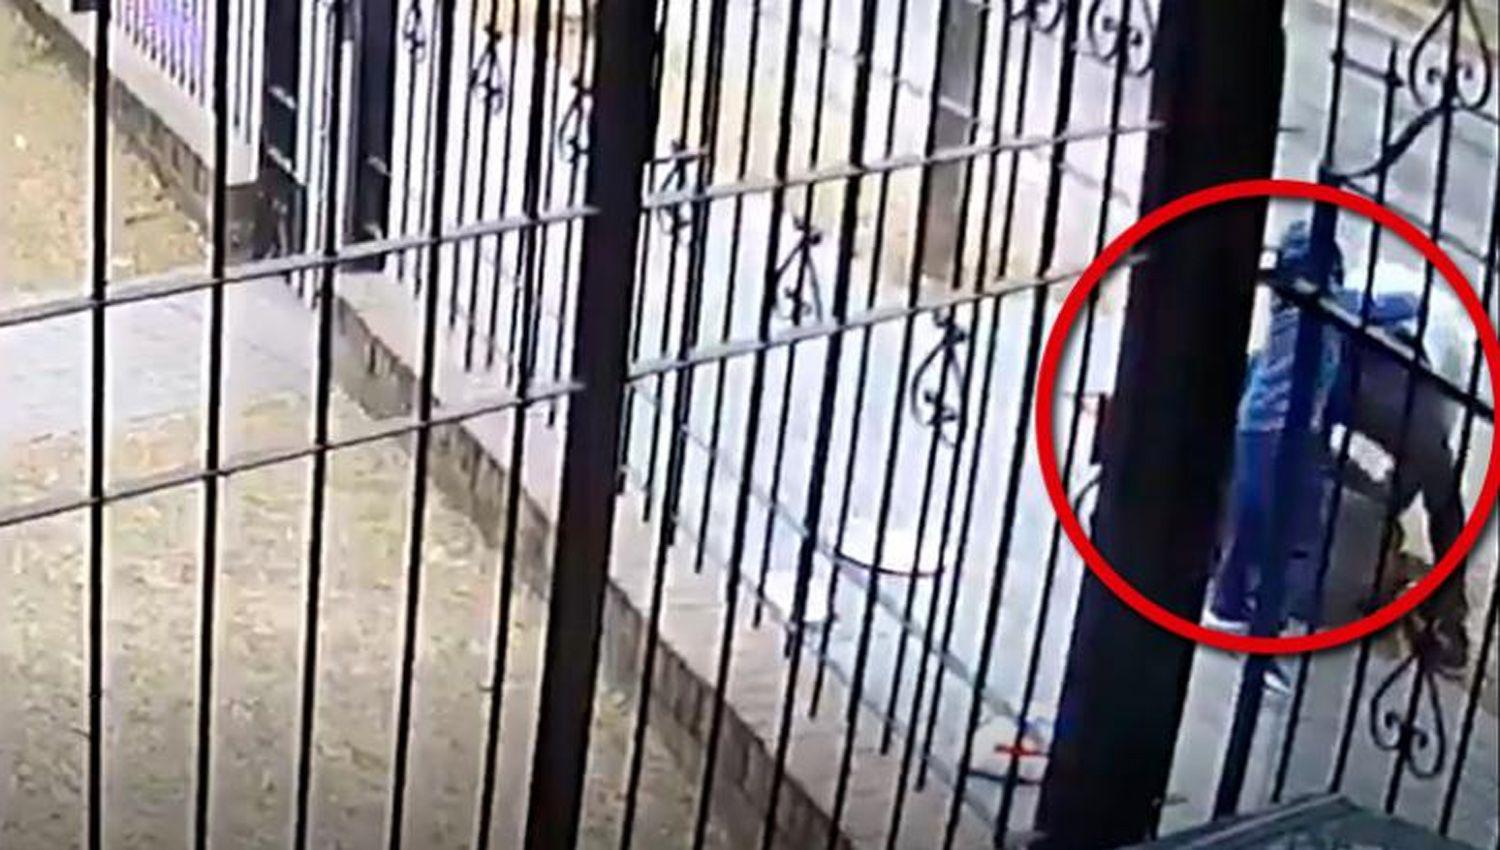 VIDEO  Un nene de cinco antildeos defendioacute a su madre del ataque de un ladroacuten